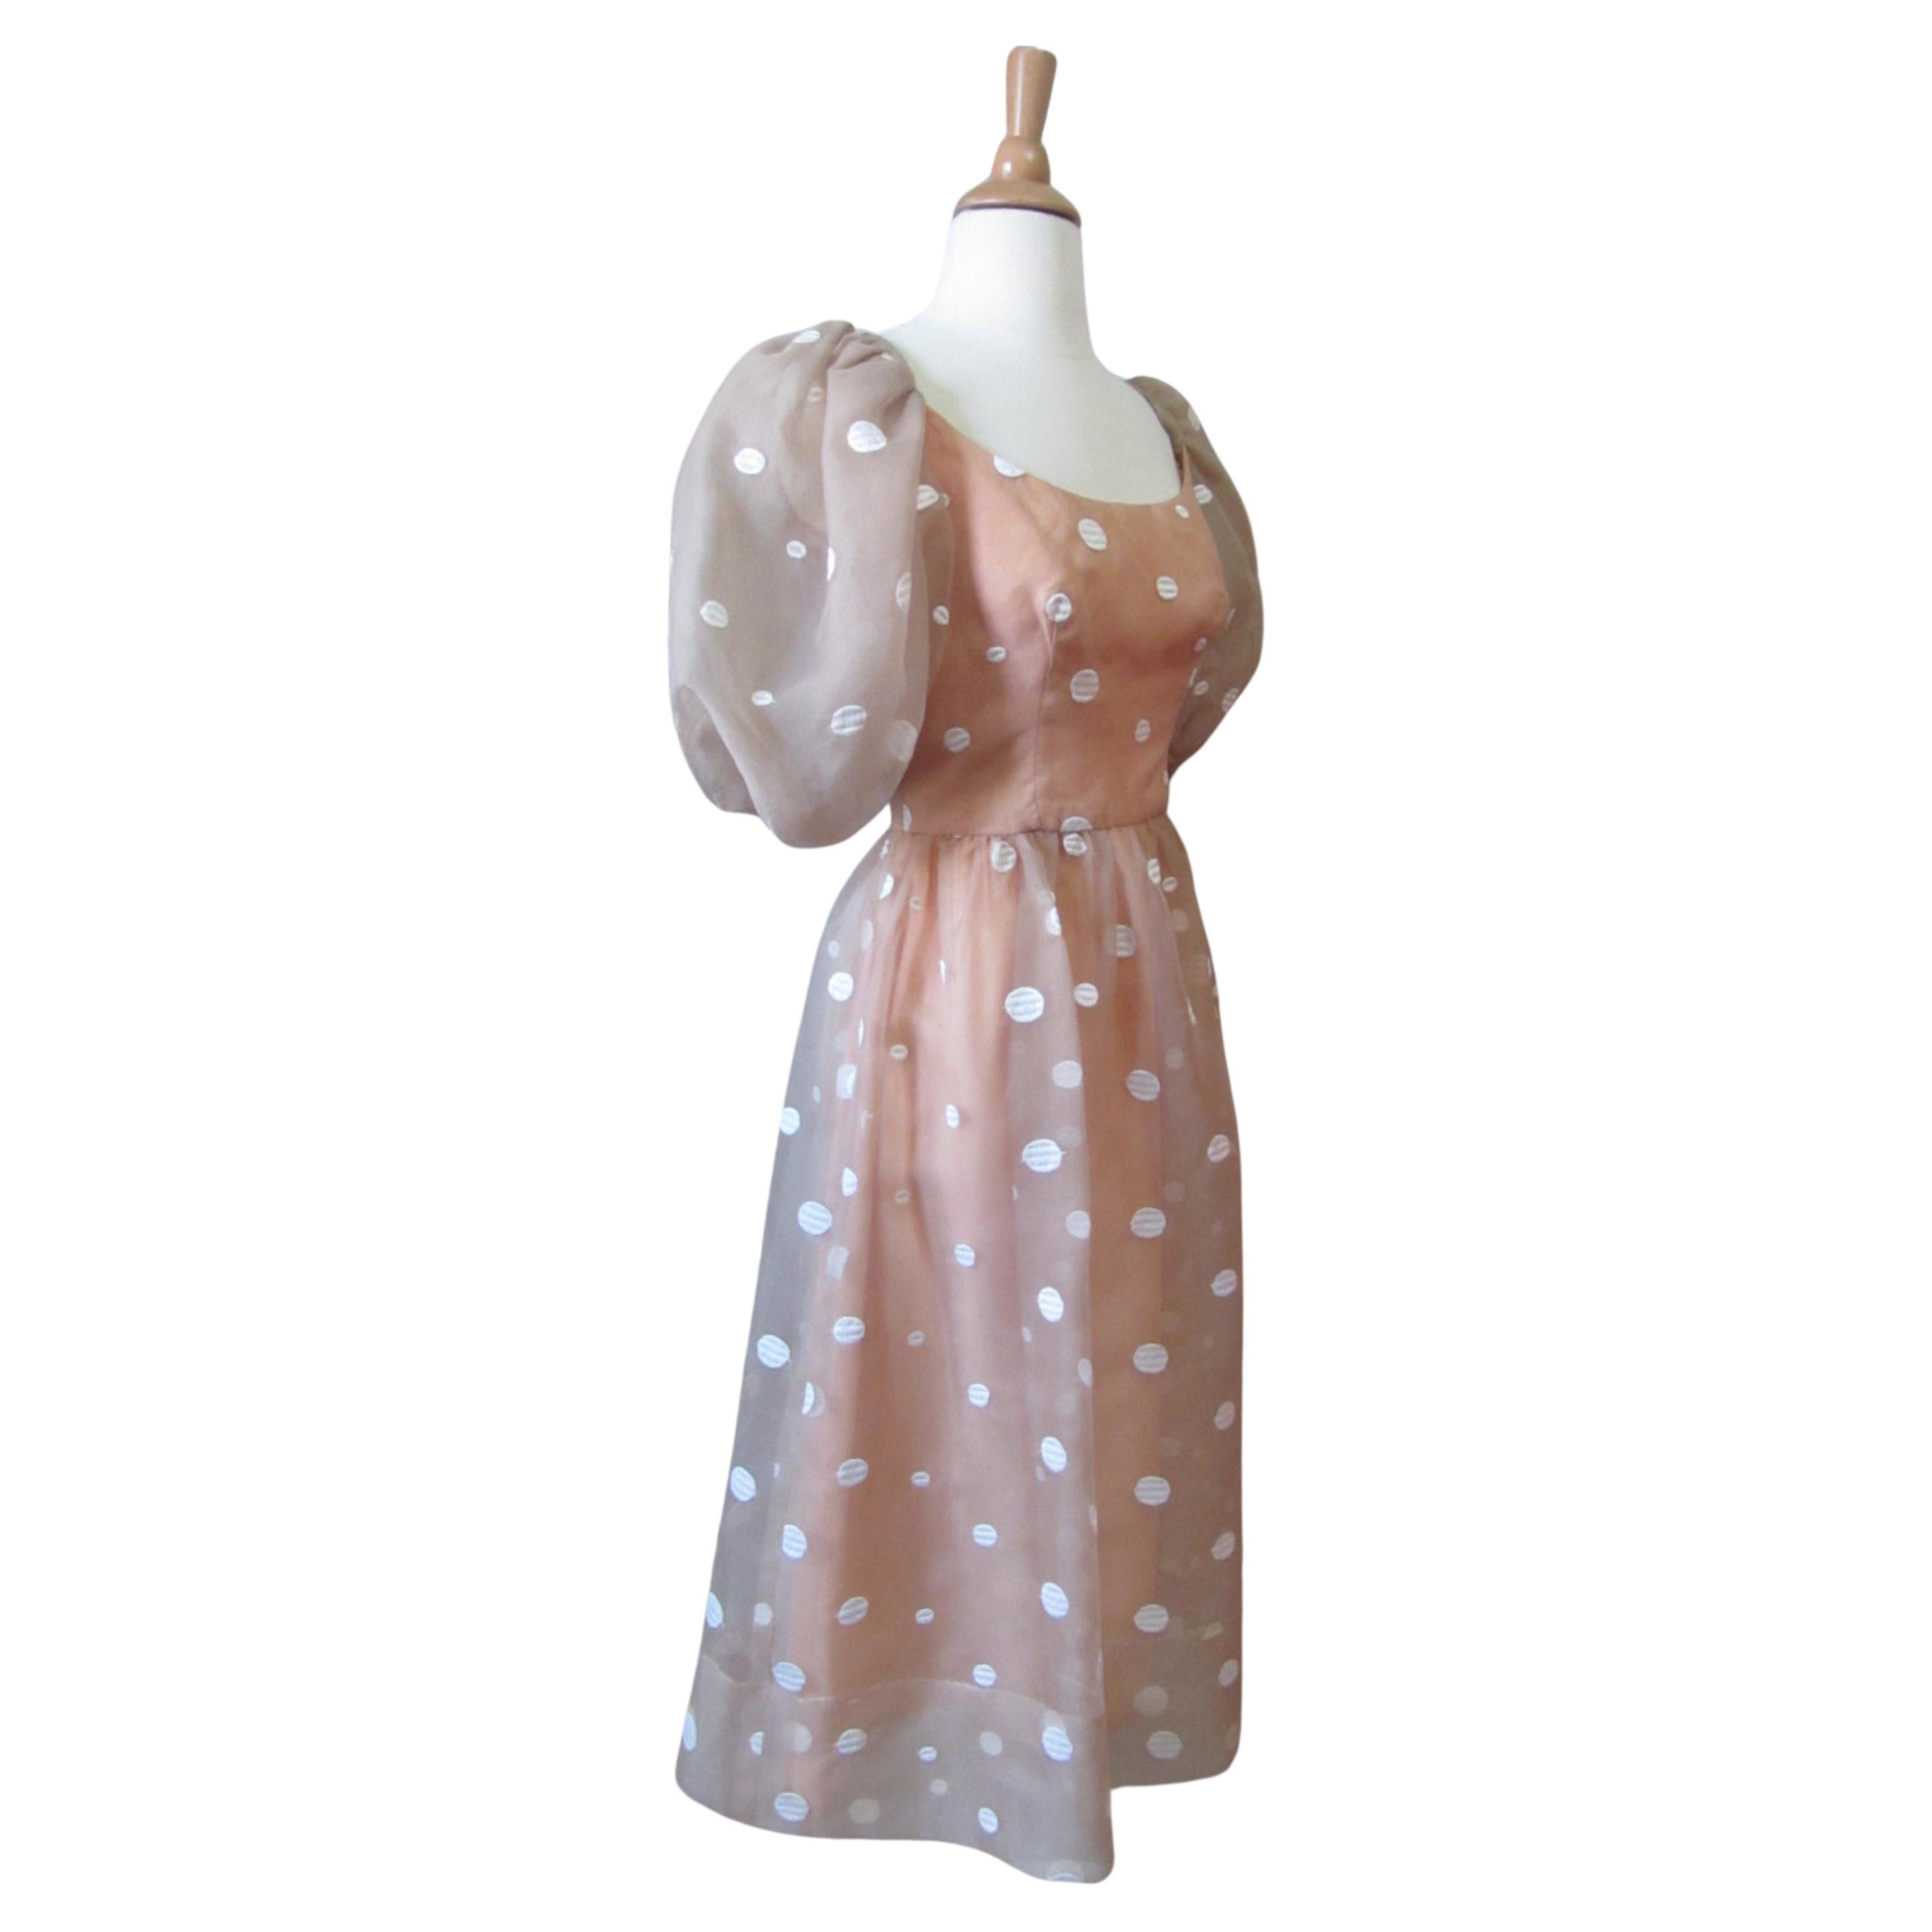 Lillie Rubin Polka Dot Dress, Circa 1980s For Sale